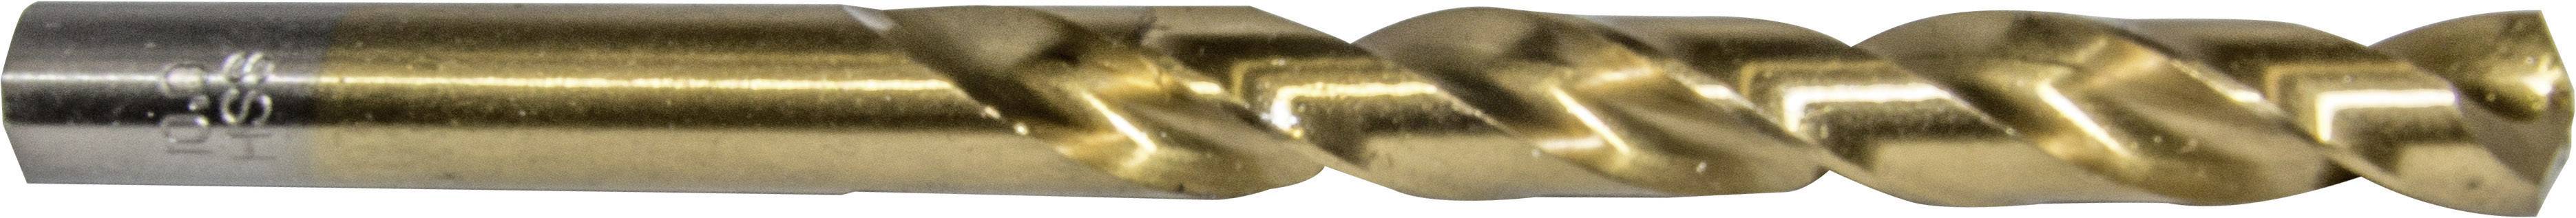 HELLER 29275 7 Metall-Spiralbohrer 1 Stück 10.5 mm Gesamtlänge 133 mm 1 St.